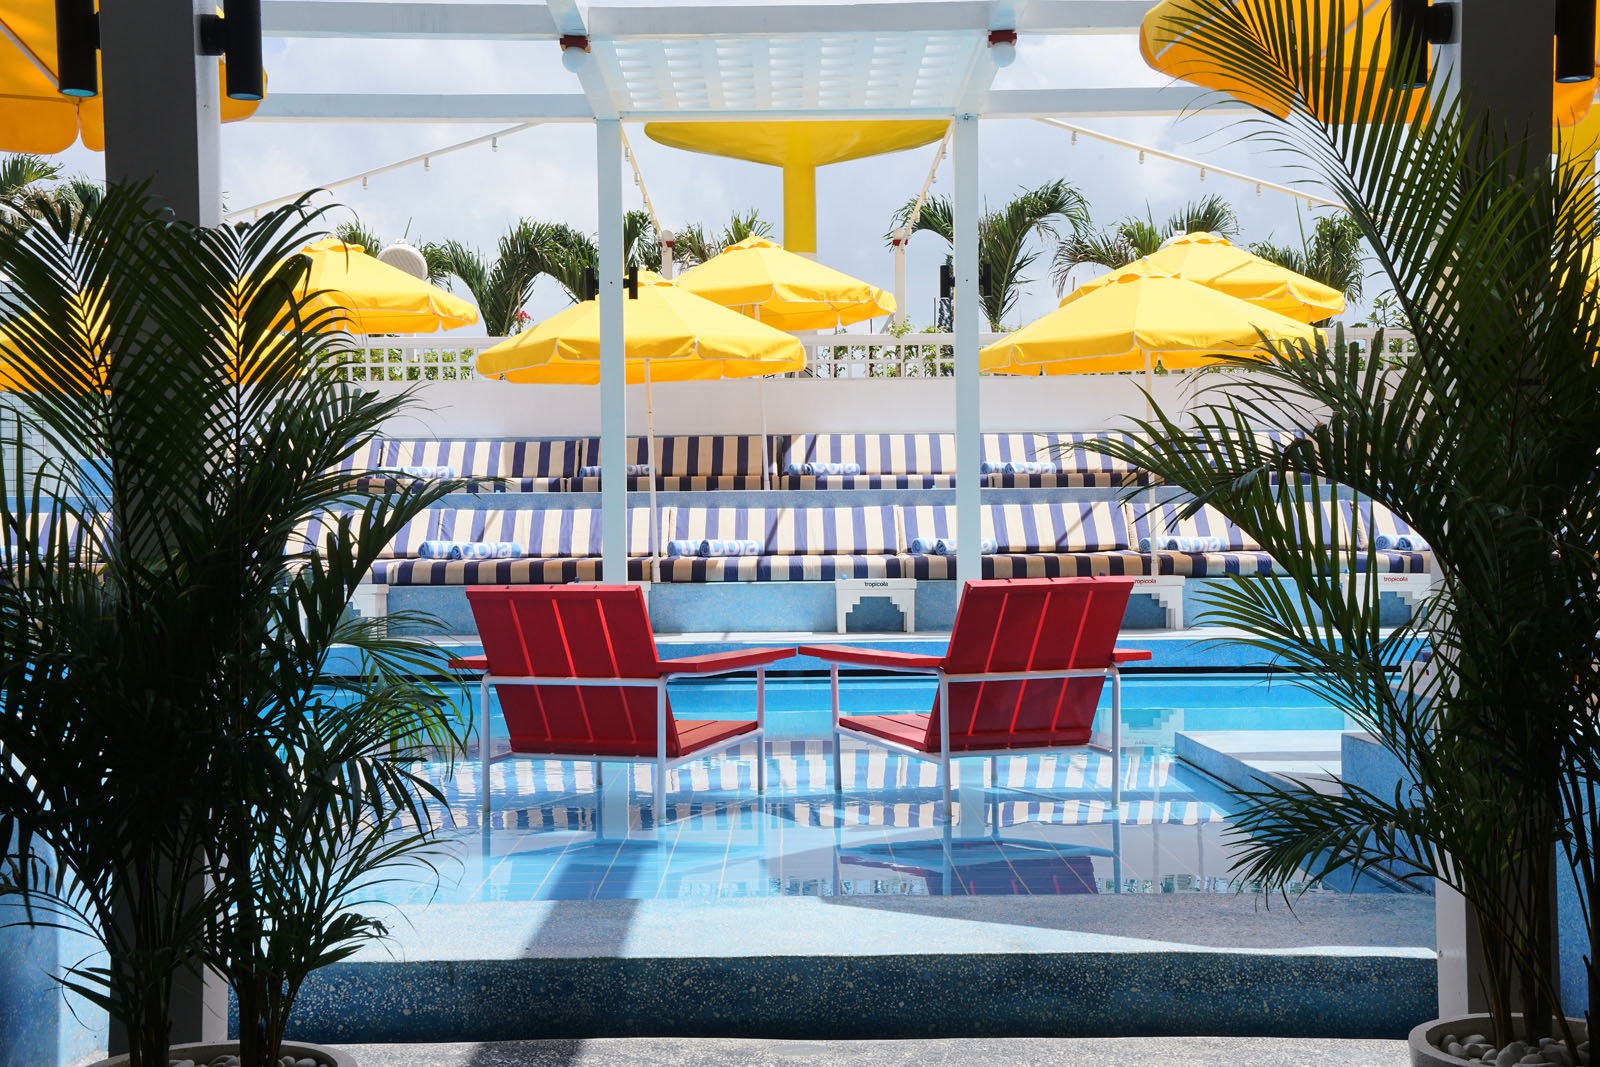 Tropicola - Beach Club in Bali - Bali Architect - Interior Design - Swimming Pool